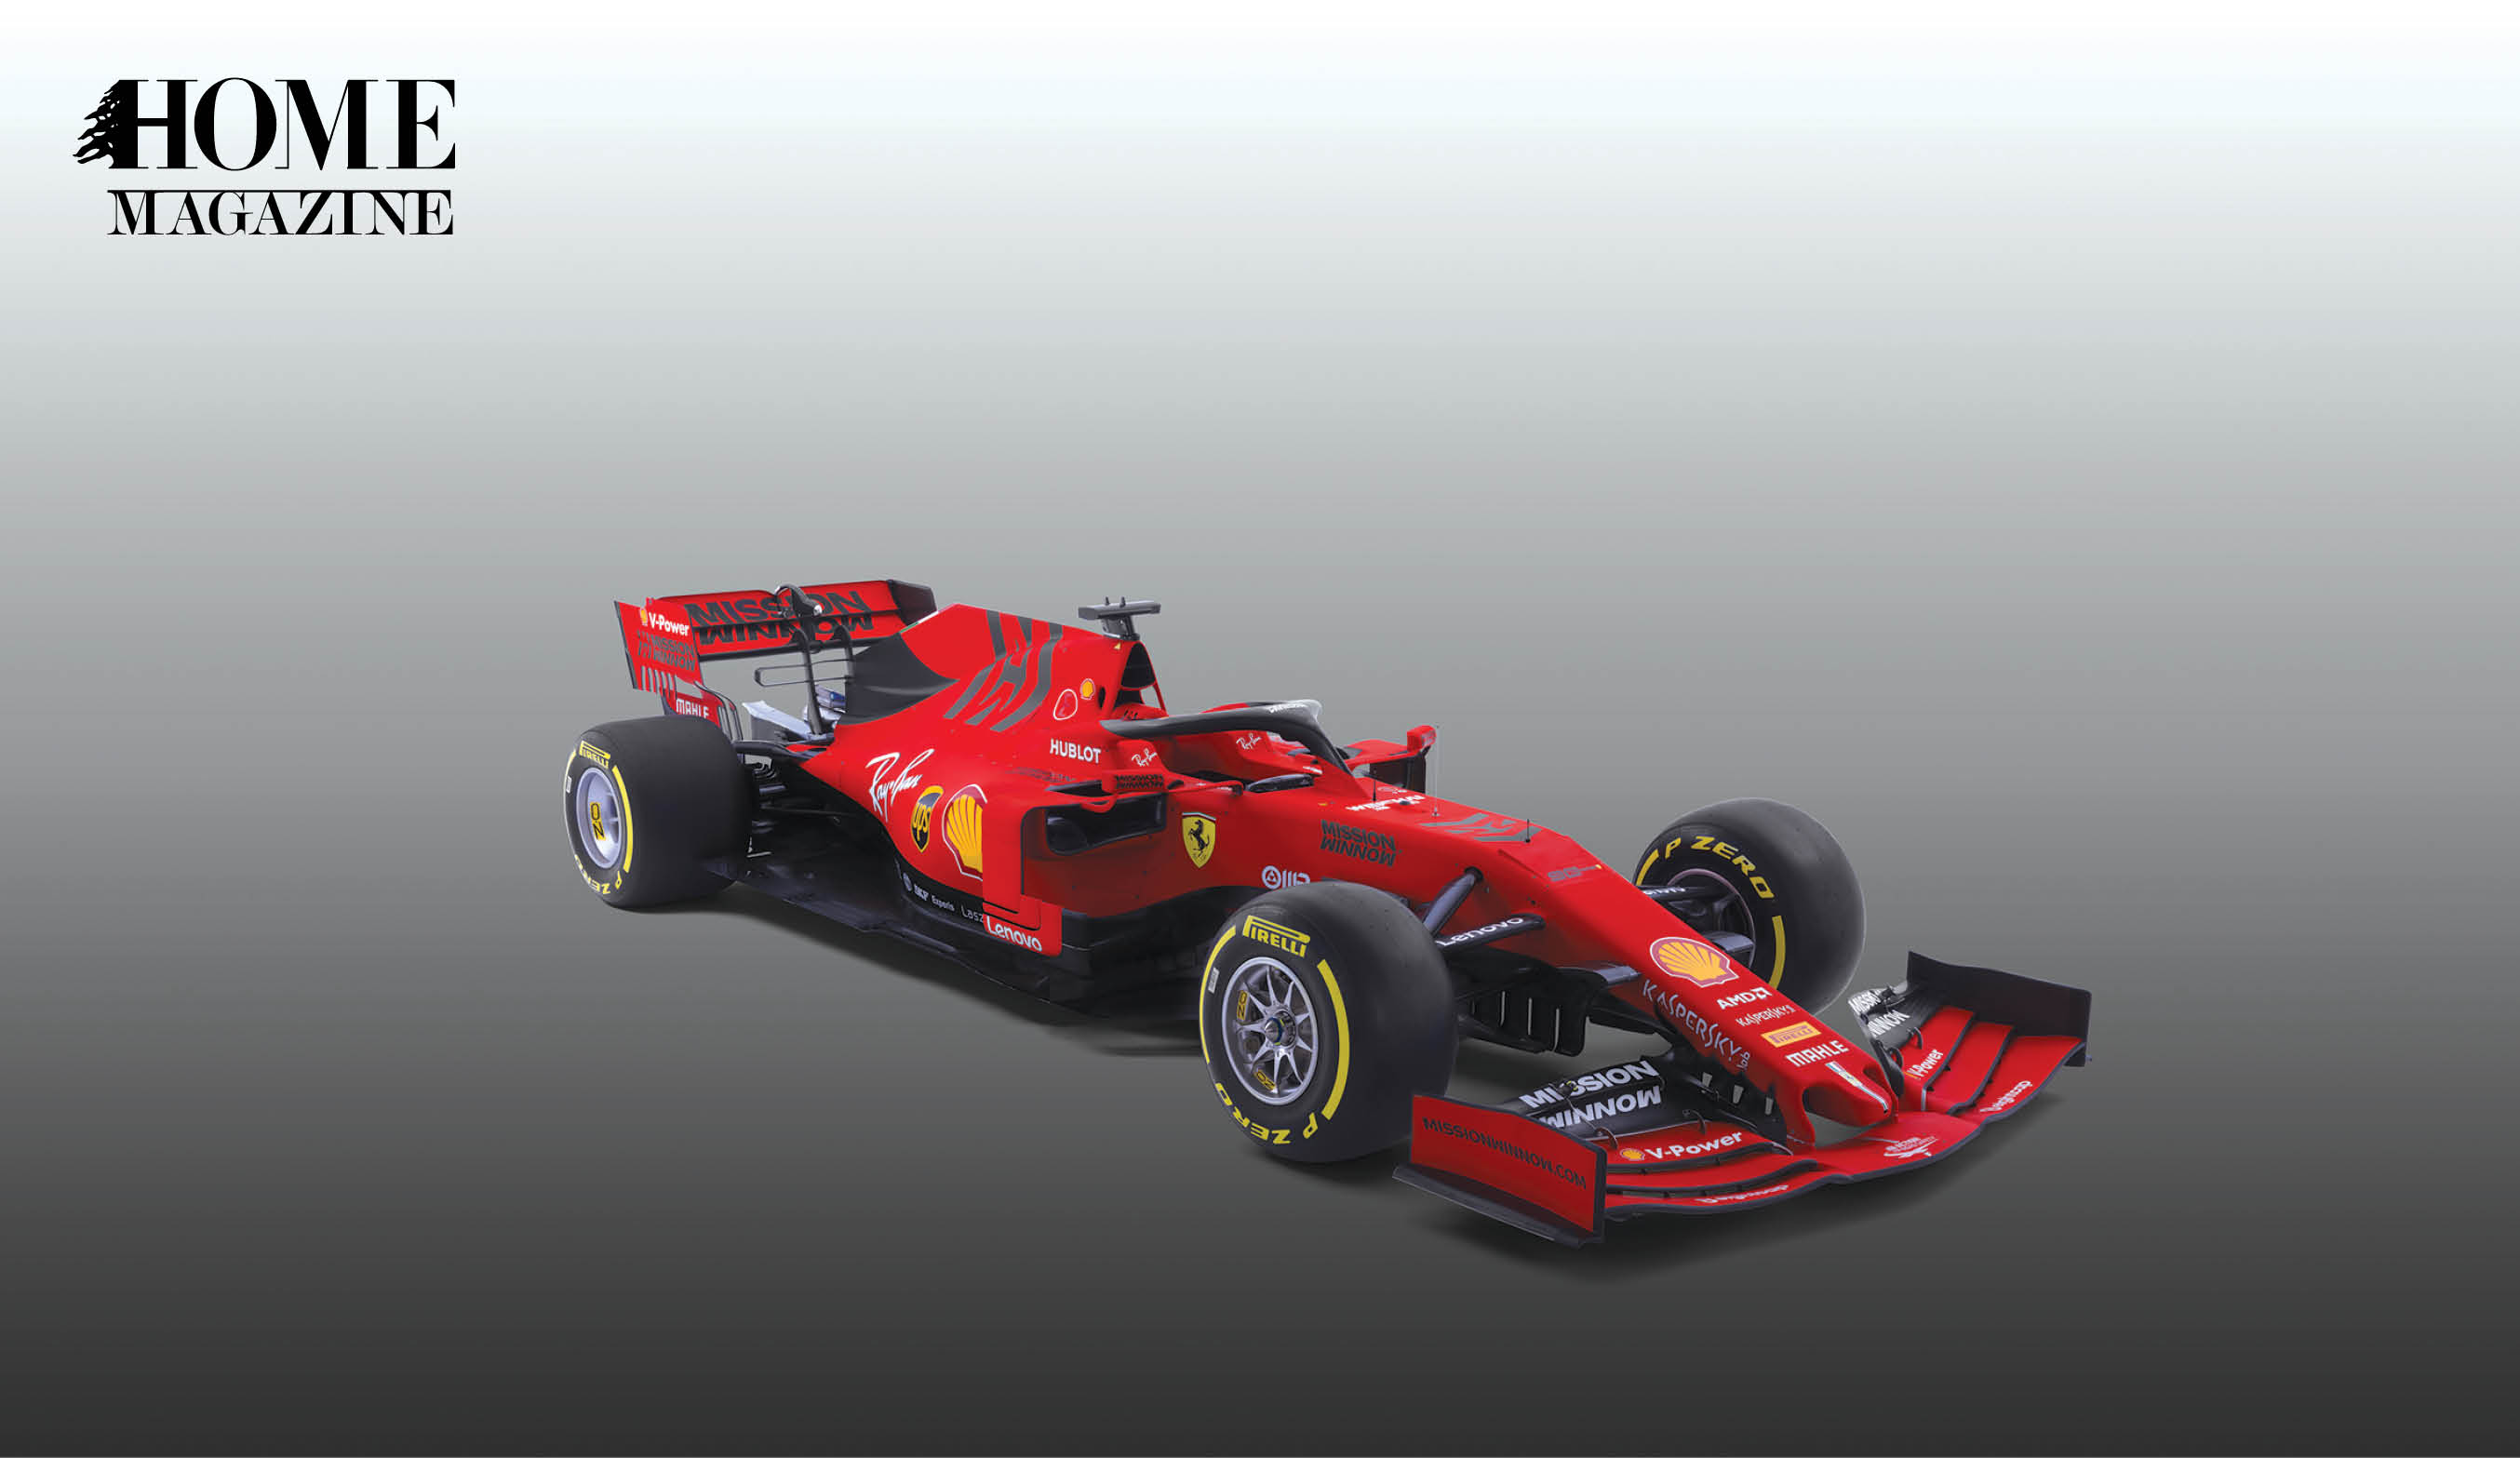 Red racing car